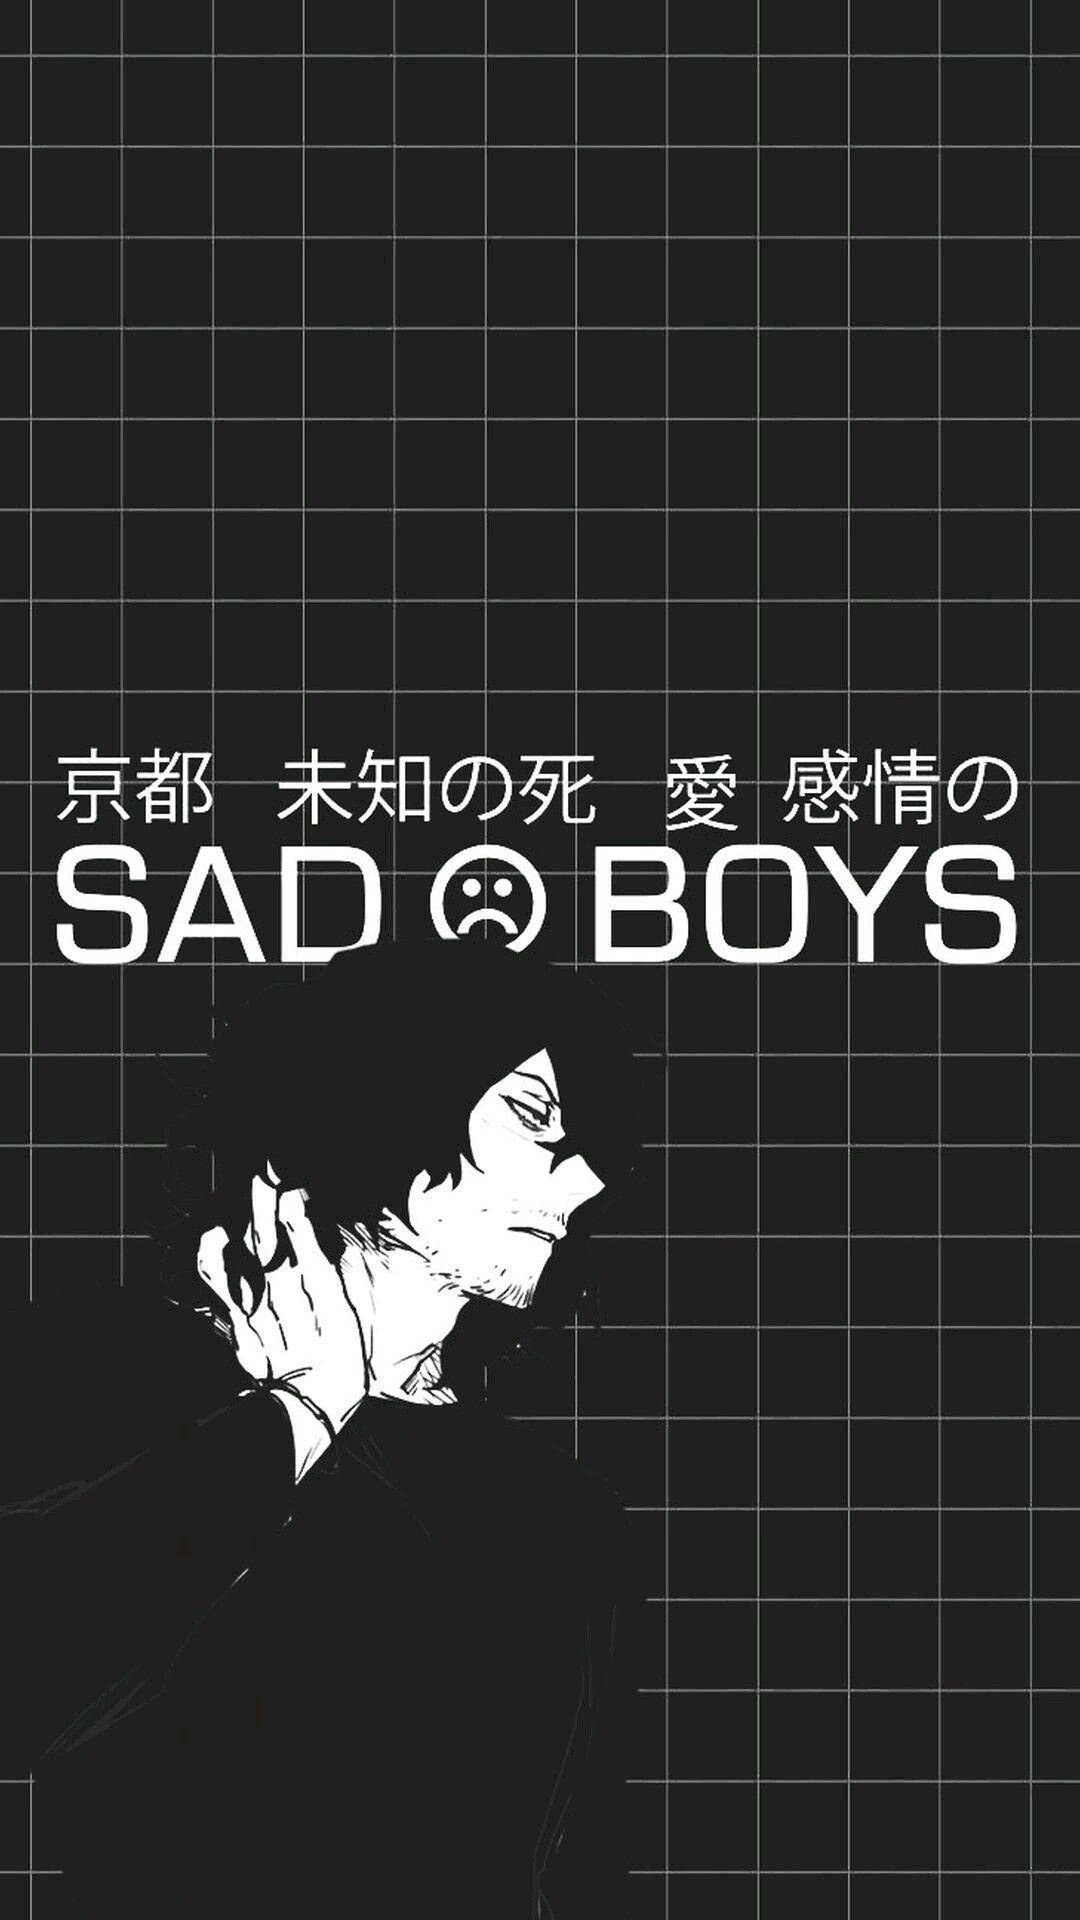 Dark Anime Aesthetic Sad Boys